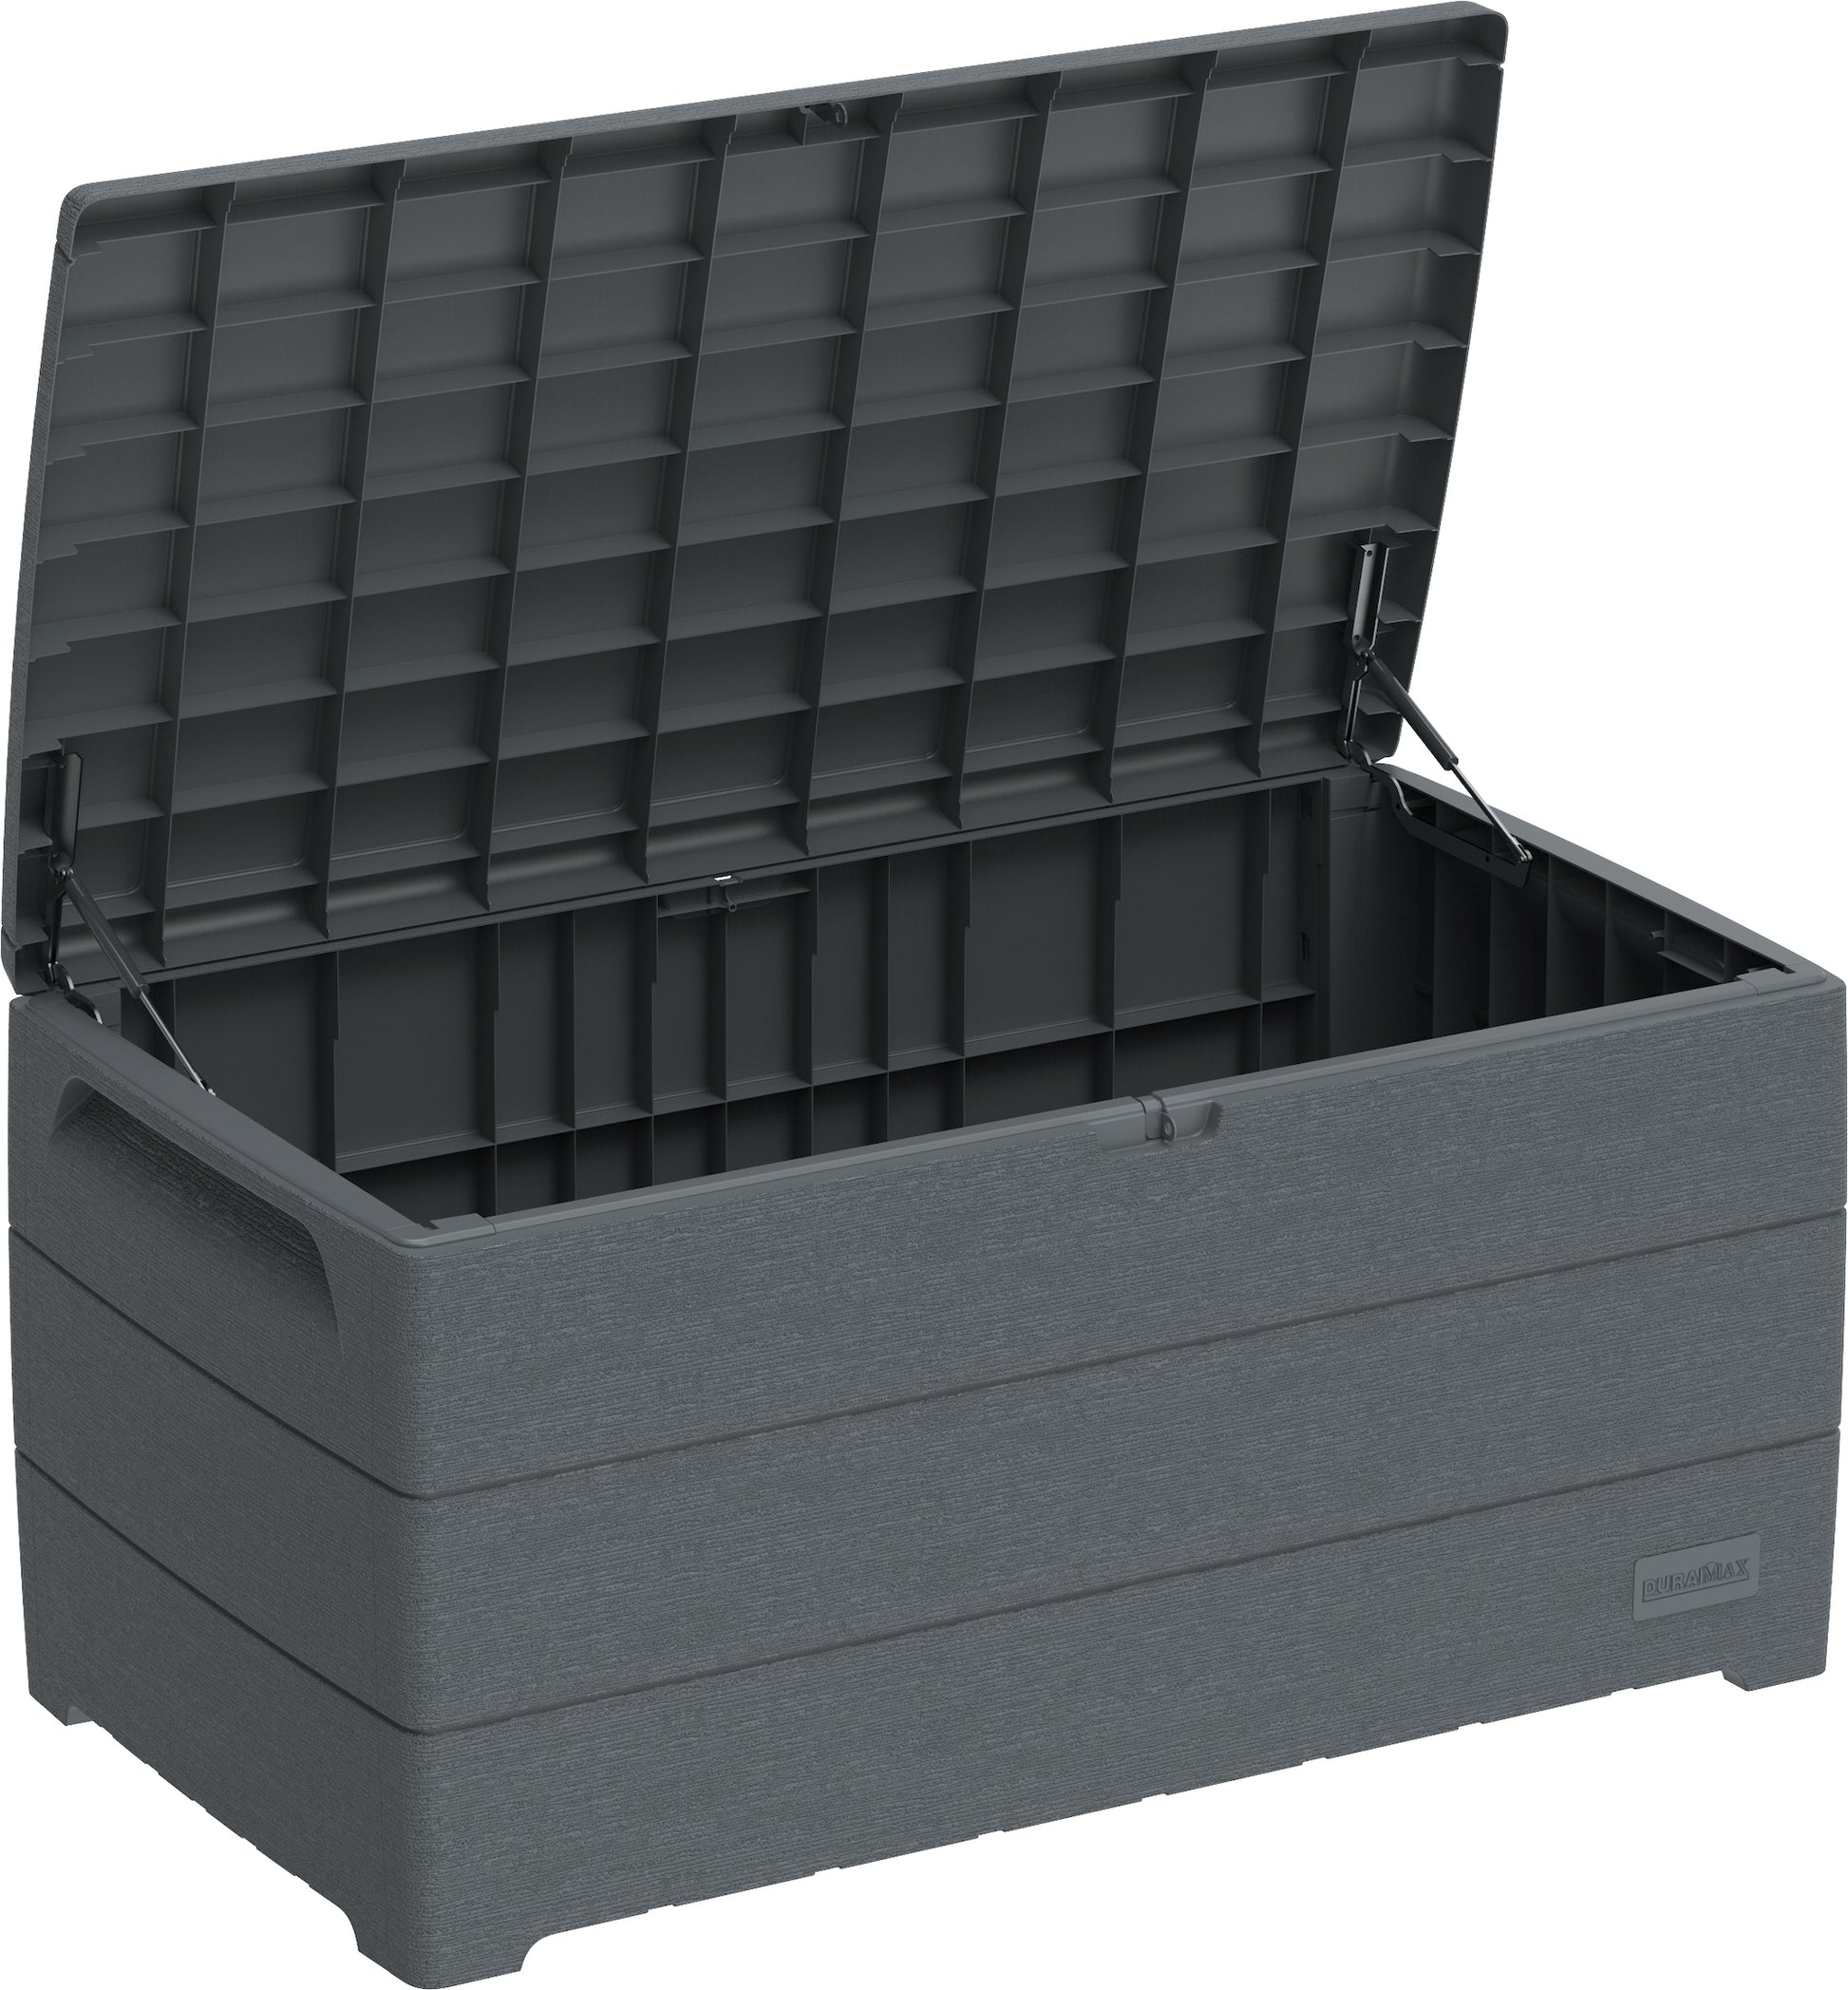 Duramax 110 Gallon Outdoor Deck Box